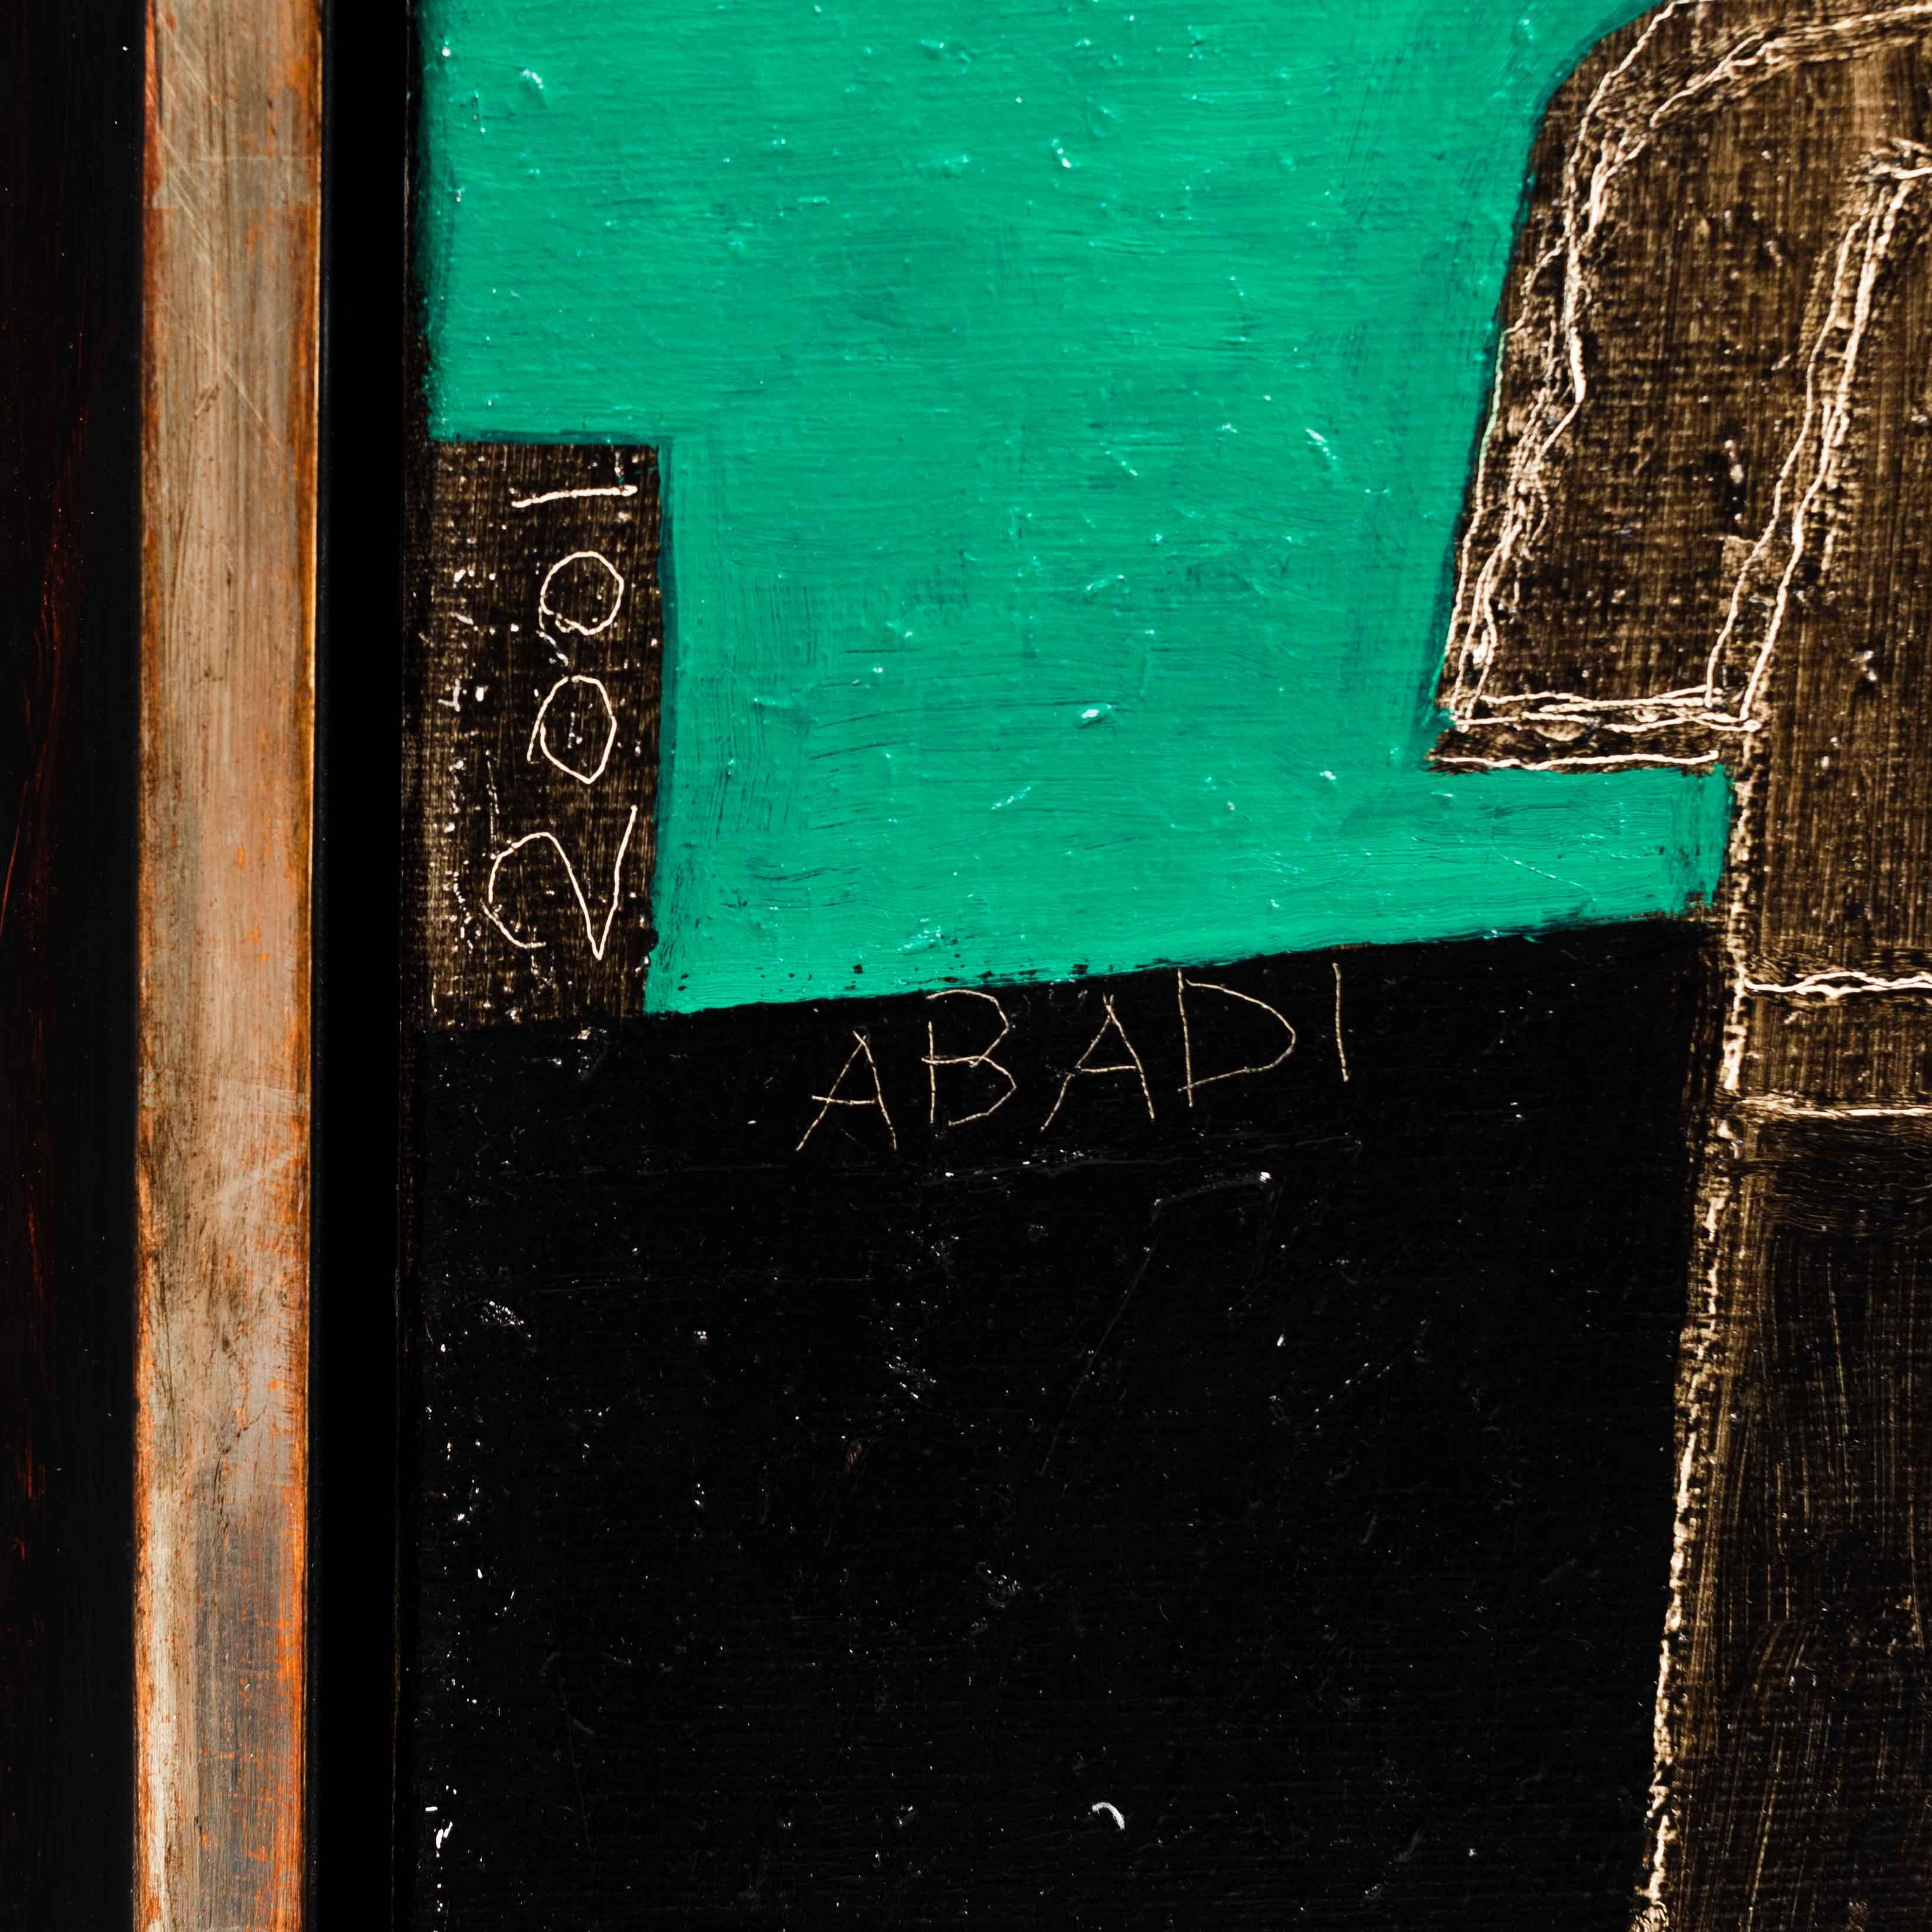 Kubistische Malerei in Acryl auf Leinwand, Fritzie Abadi New York, 2001

In kräftigen, gedeckten Farben werden kantige Figuren und Elemente zerlegt und in einem anderen Kontext wieder zusammengesetzt.
Die Elemente sind teilweise hell und fein